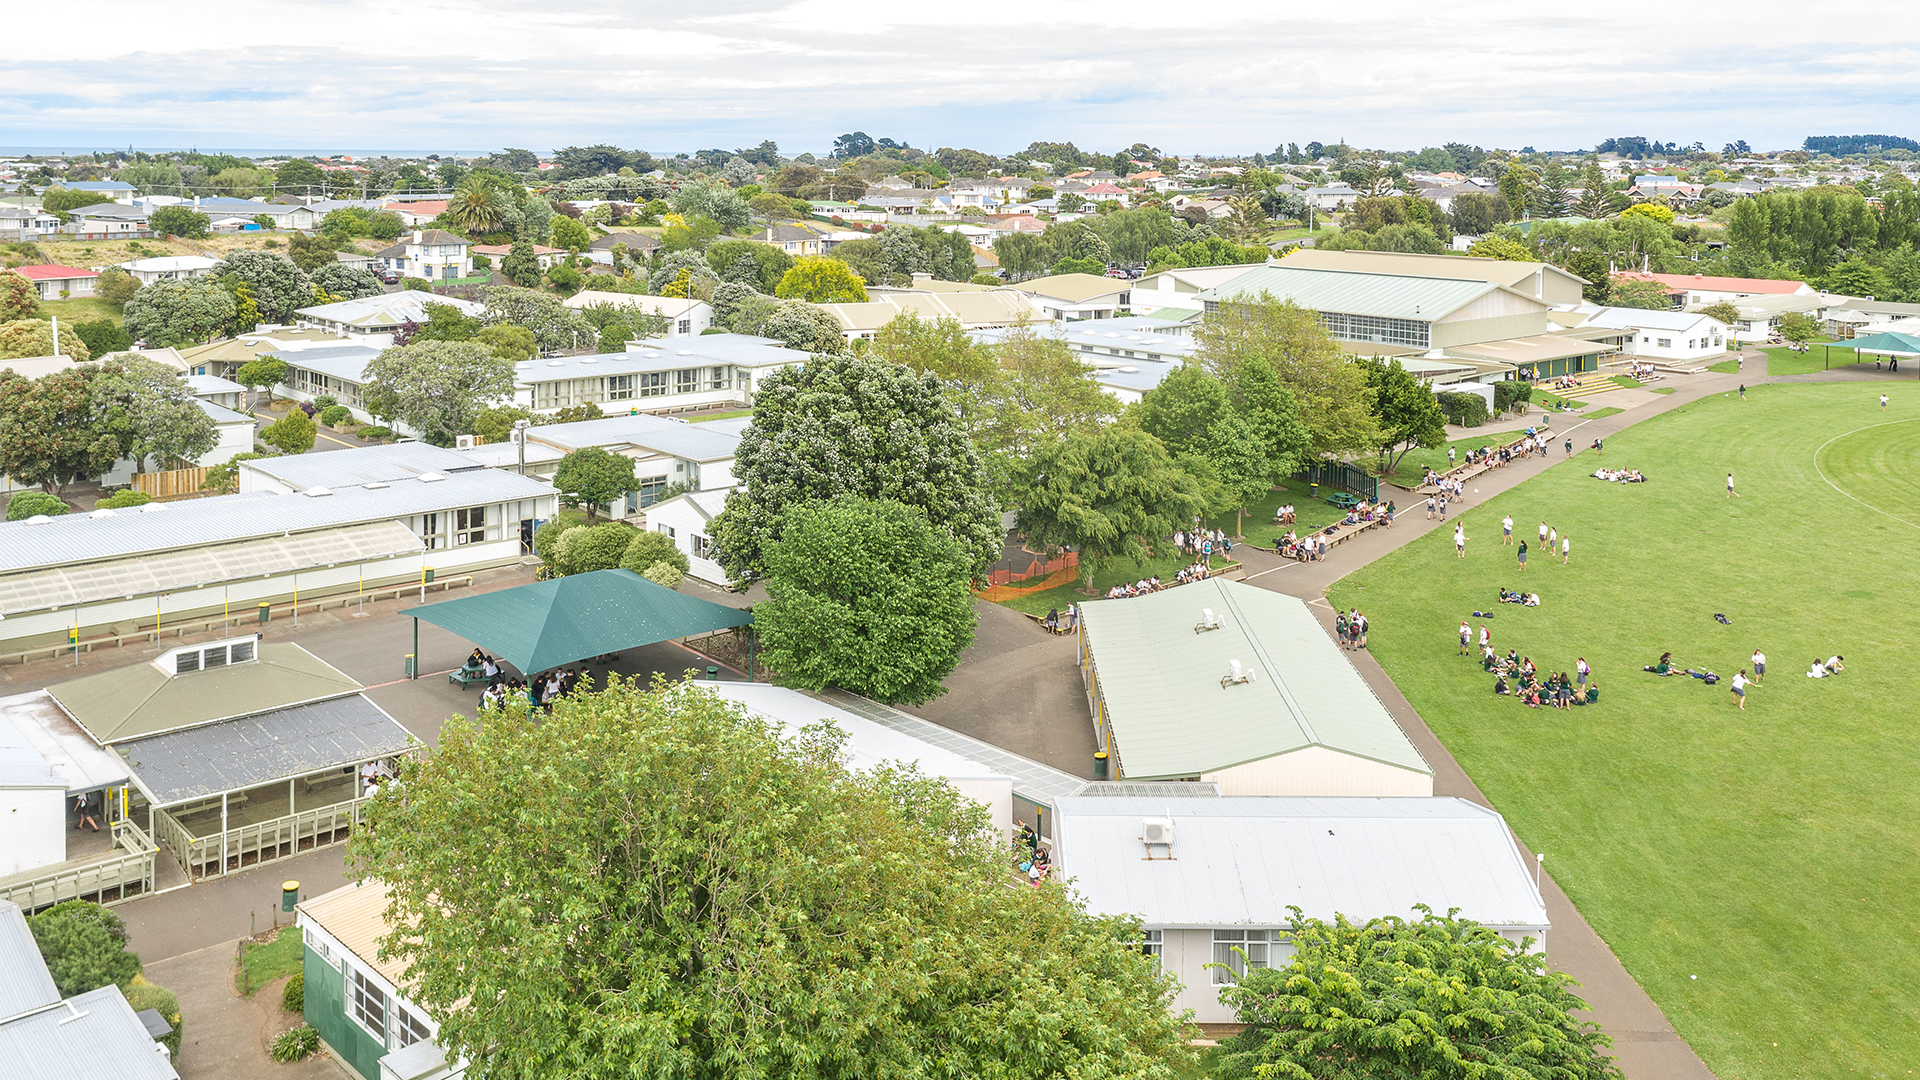 Whanganui High School